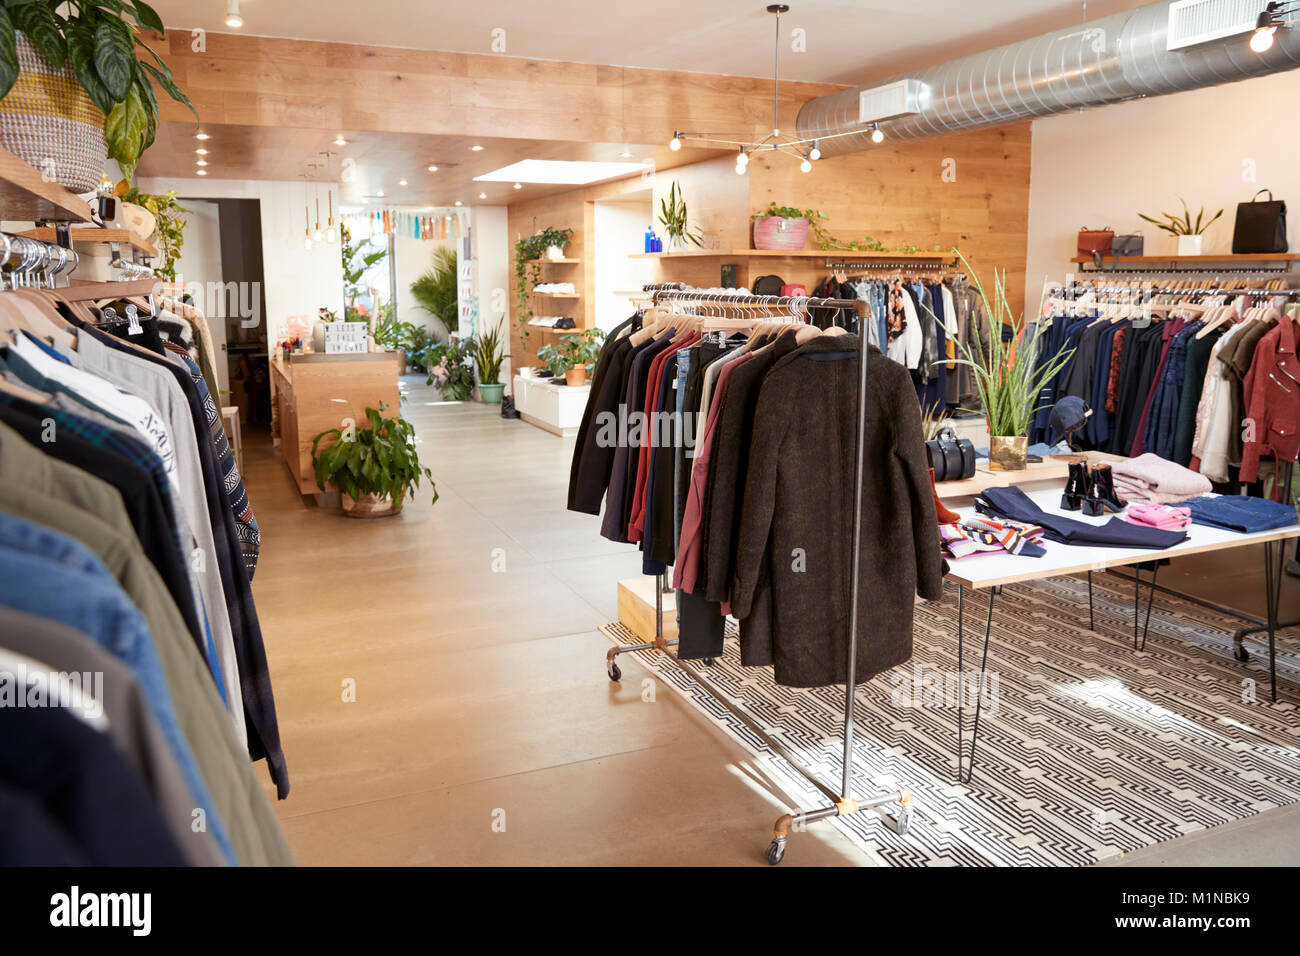 Clothes shop interior Stock Photo